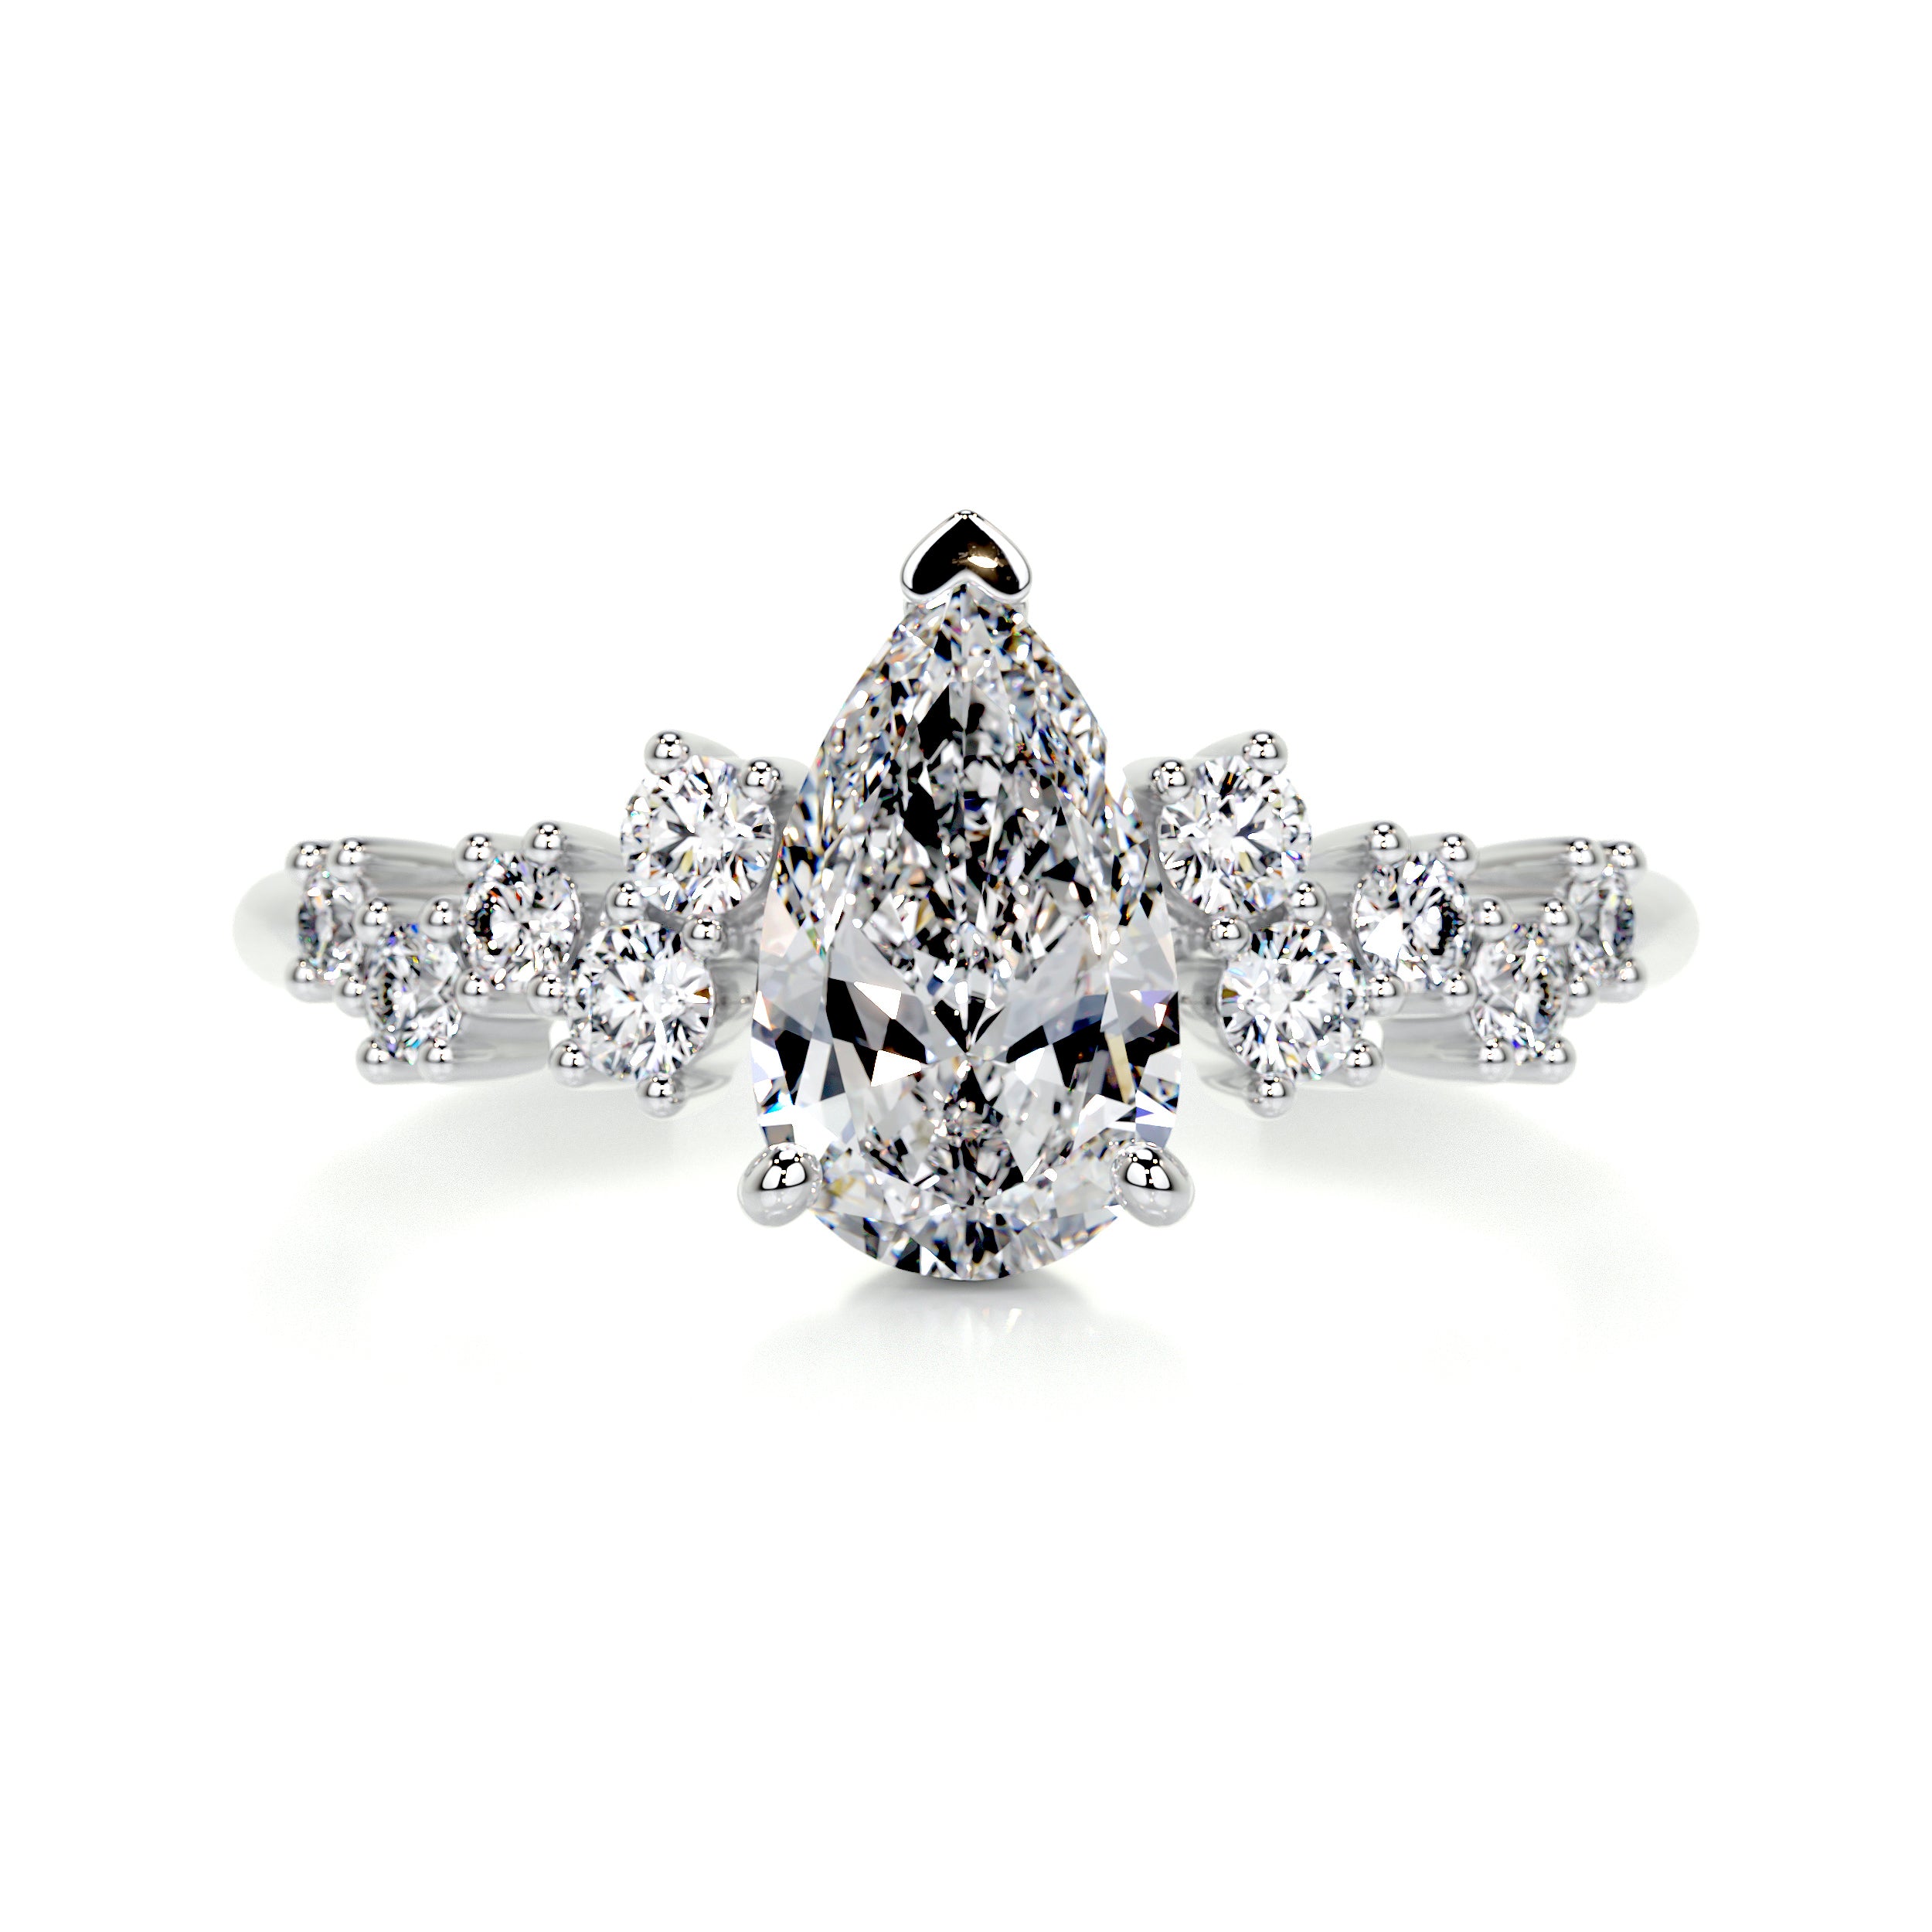 Mabel Diamond Engagement Ring   (1.25 Carat) -18K White Gold